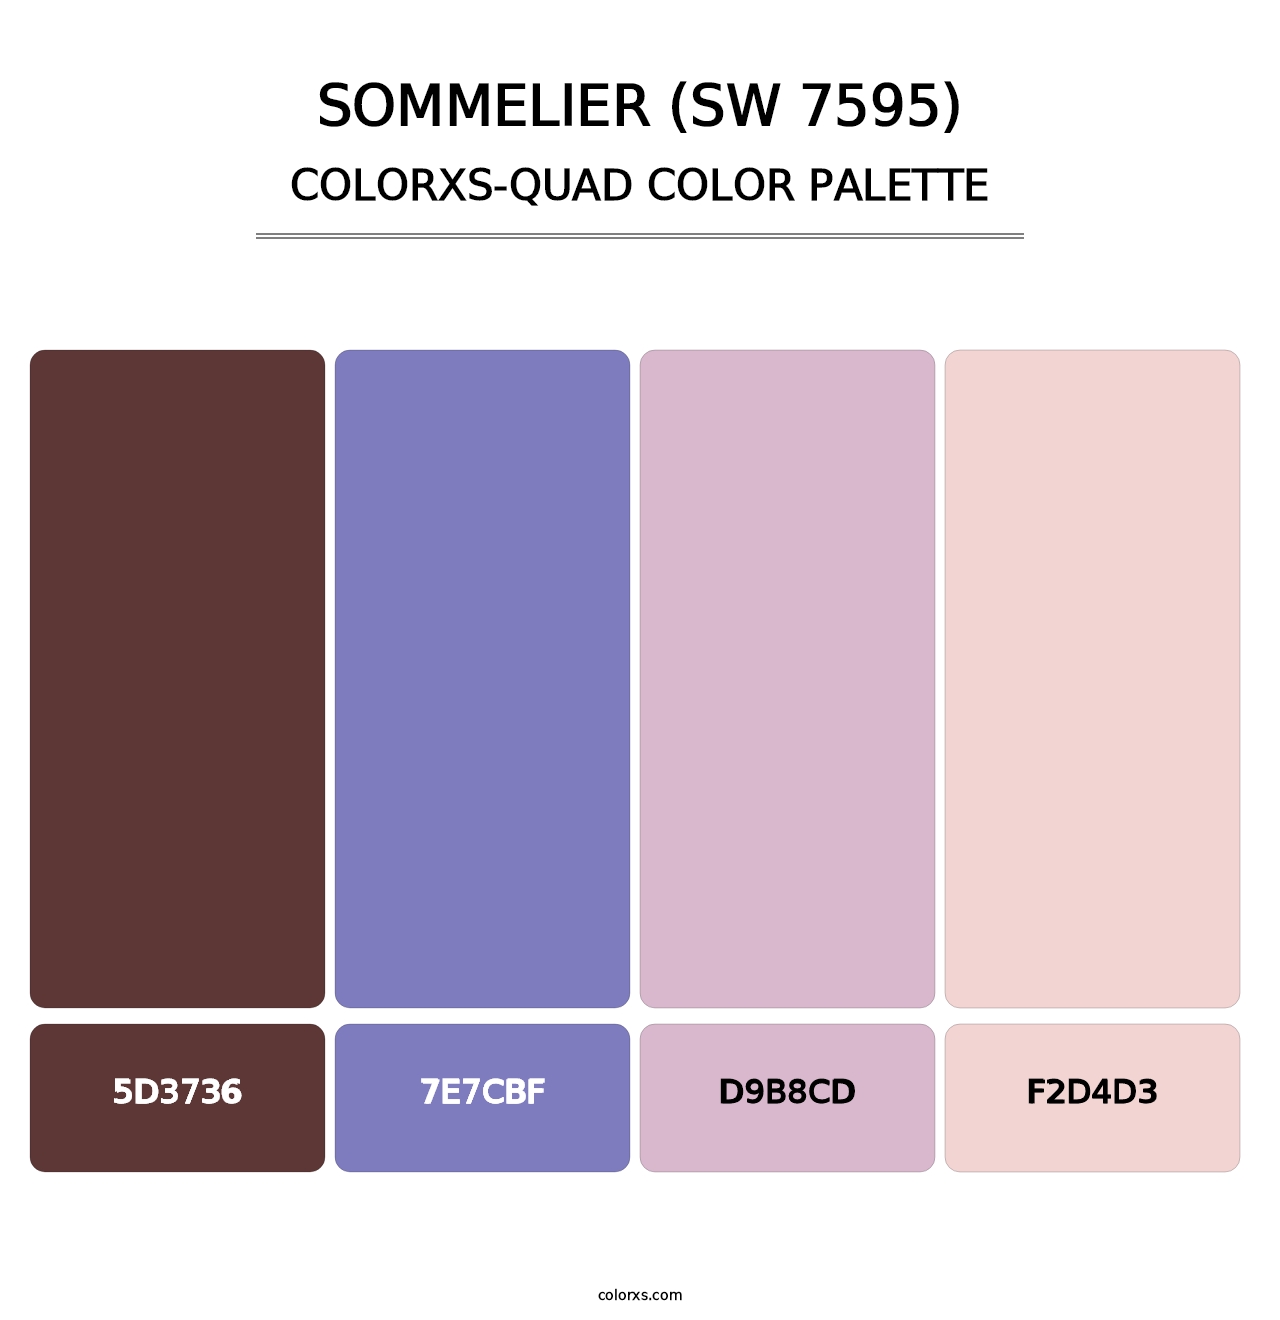 Sommelier (SW 7595) - Colorxs Quad Palette